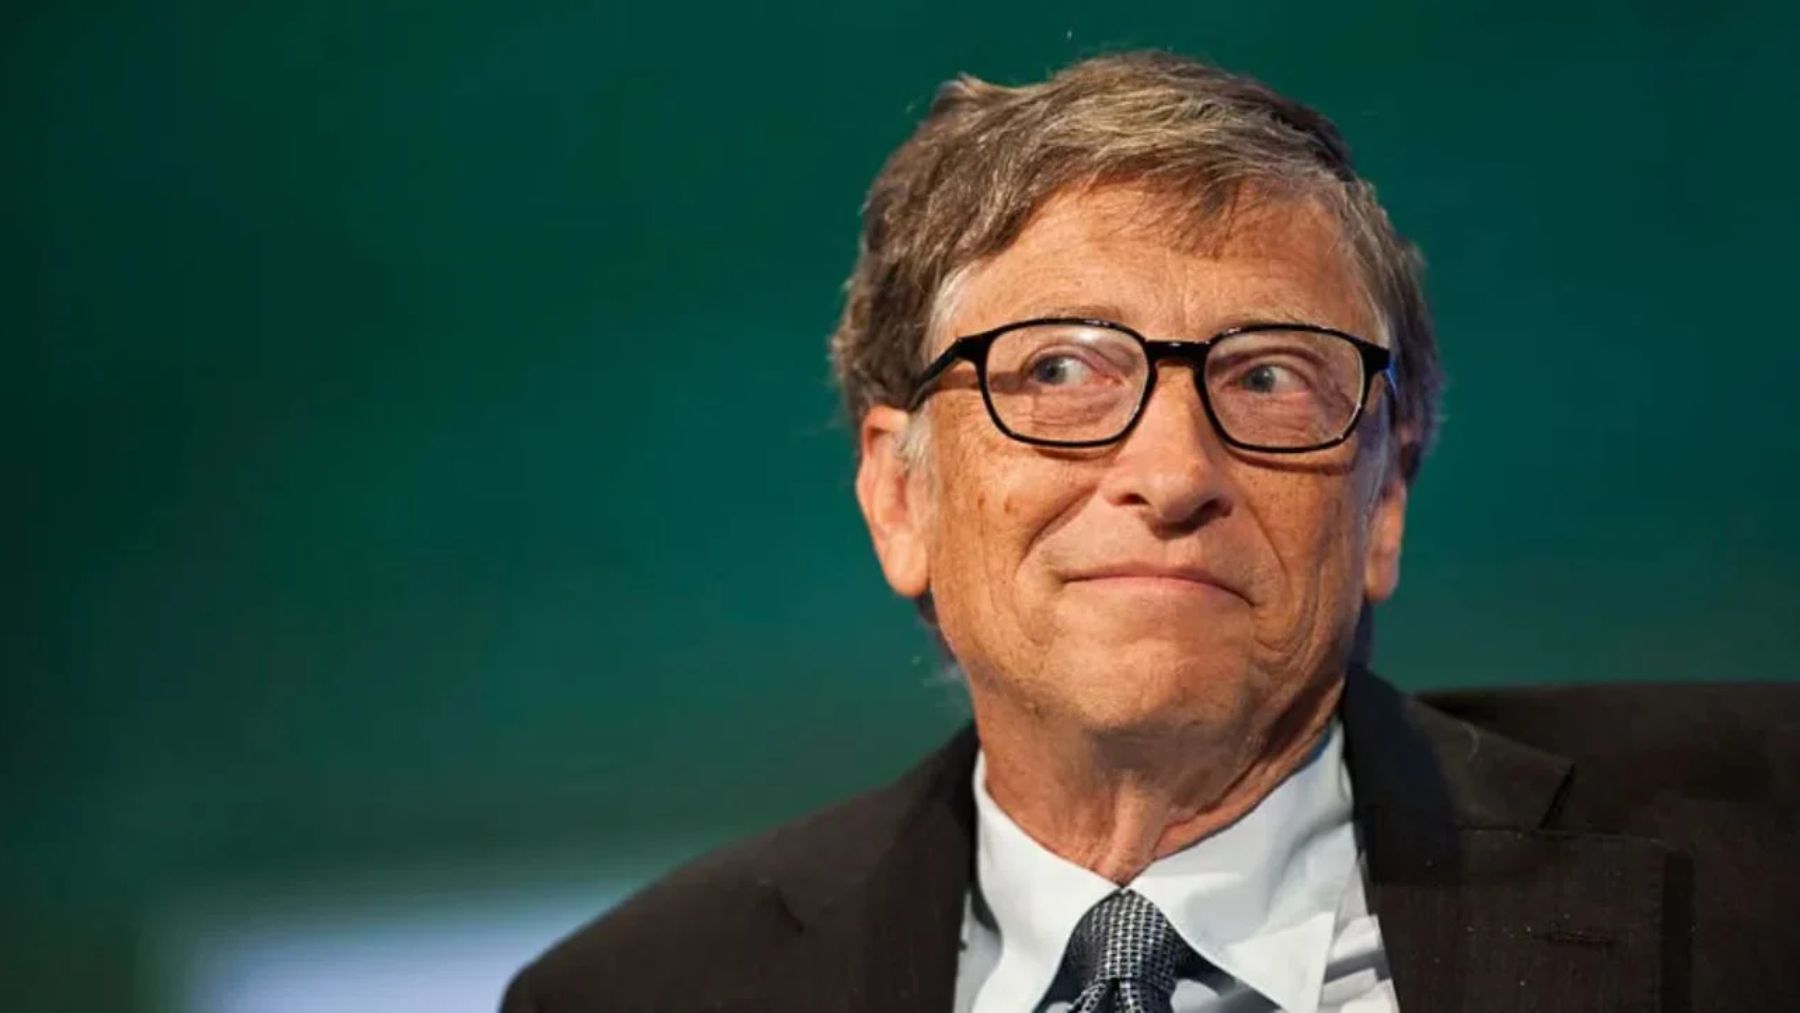 ¿Por qué la casa de Bill Gates tiene una luz verde?